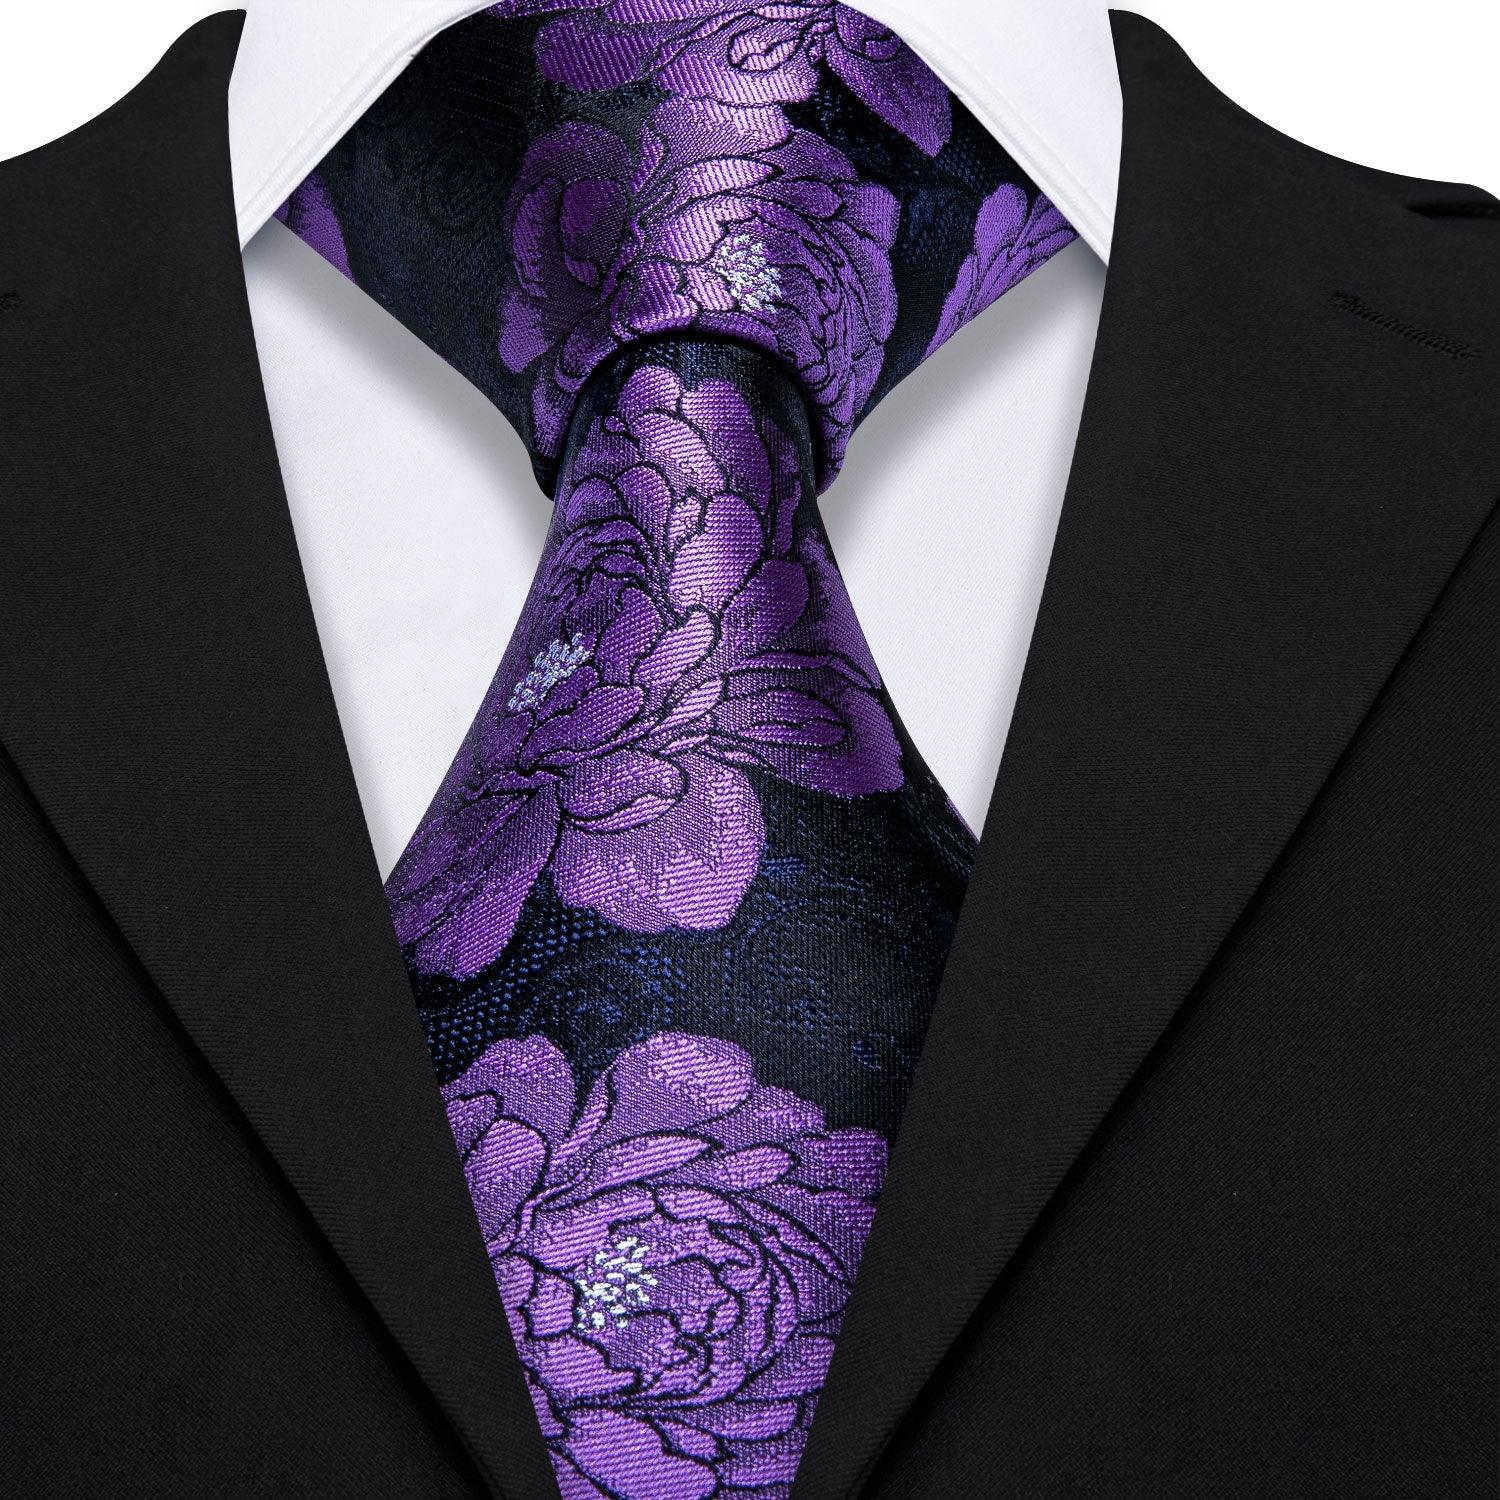 Black Purple Floral Tie Pocket Square Cufflink Set - STYLETIE